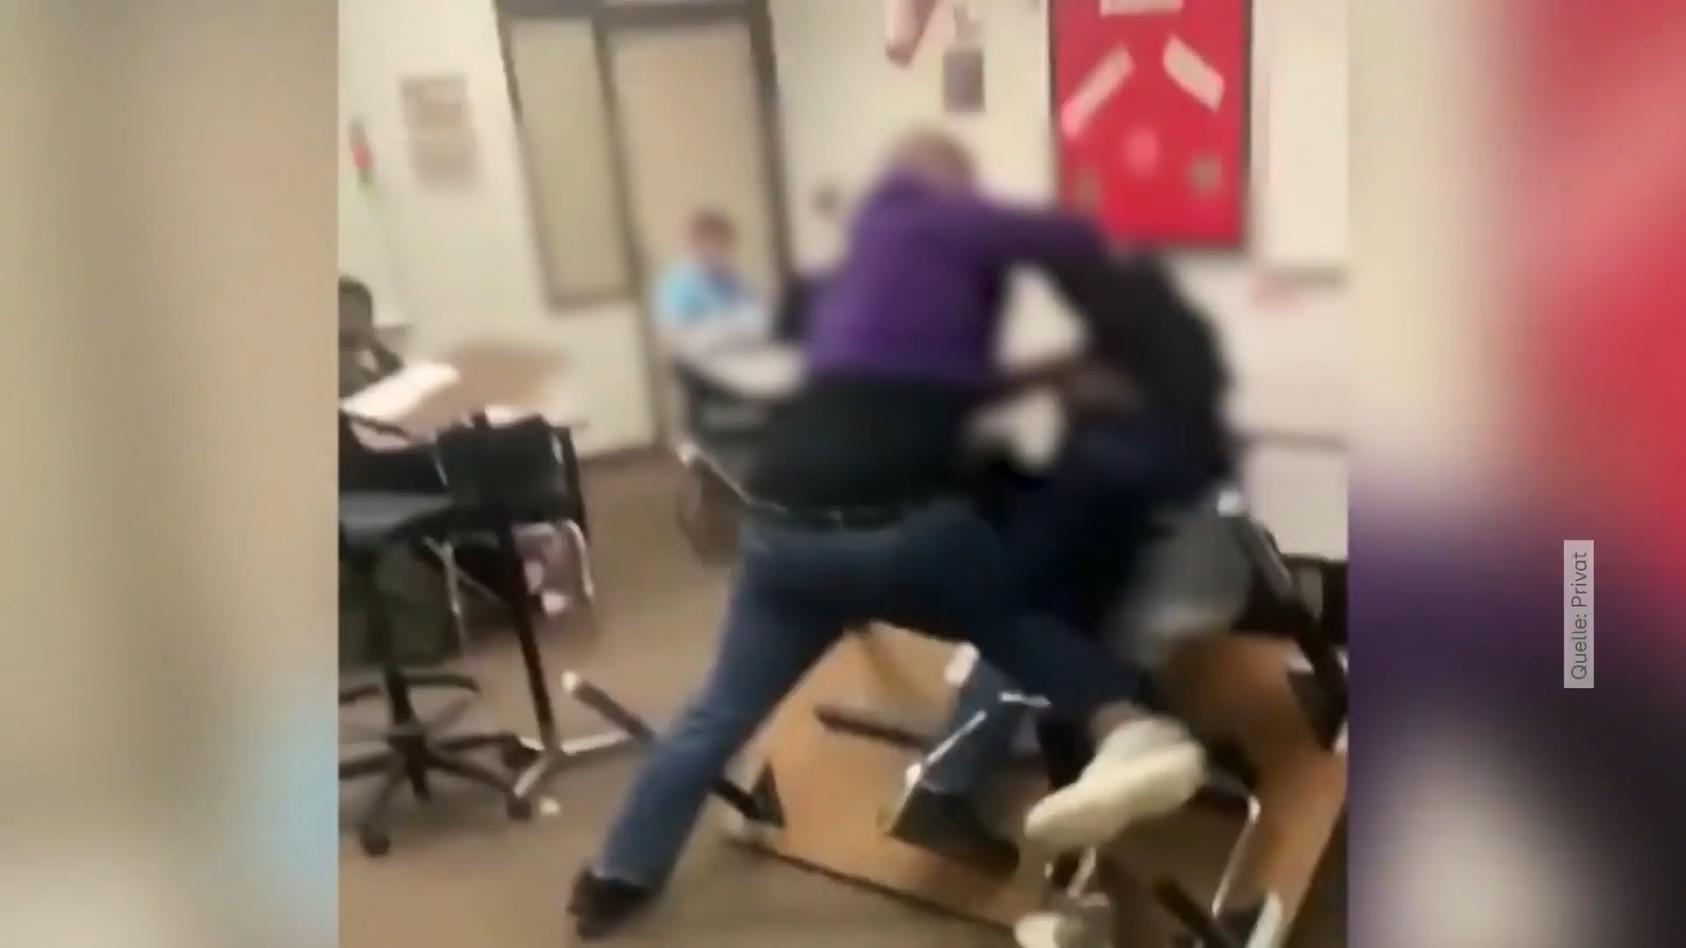 Texas: Lehrer geht auf seinen Schüler los Prügel-Video aus den USA sorgt für Aufschrei